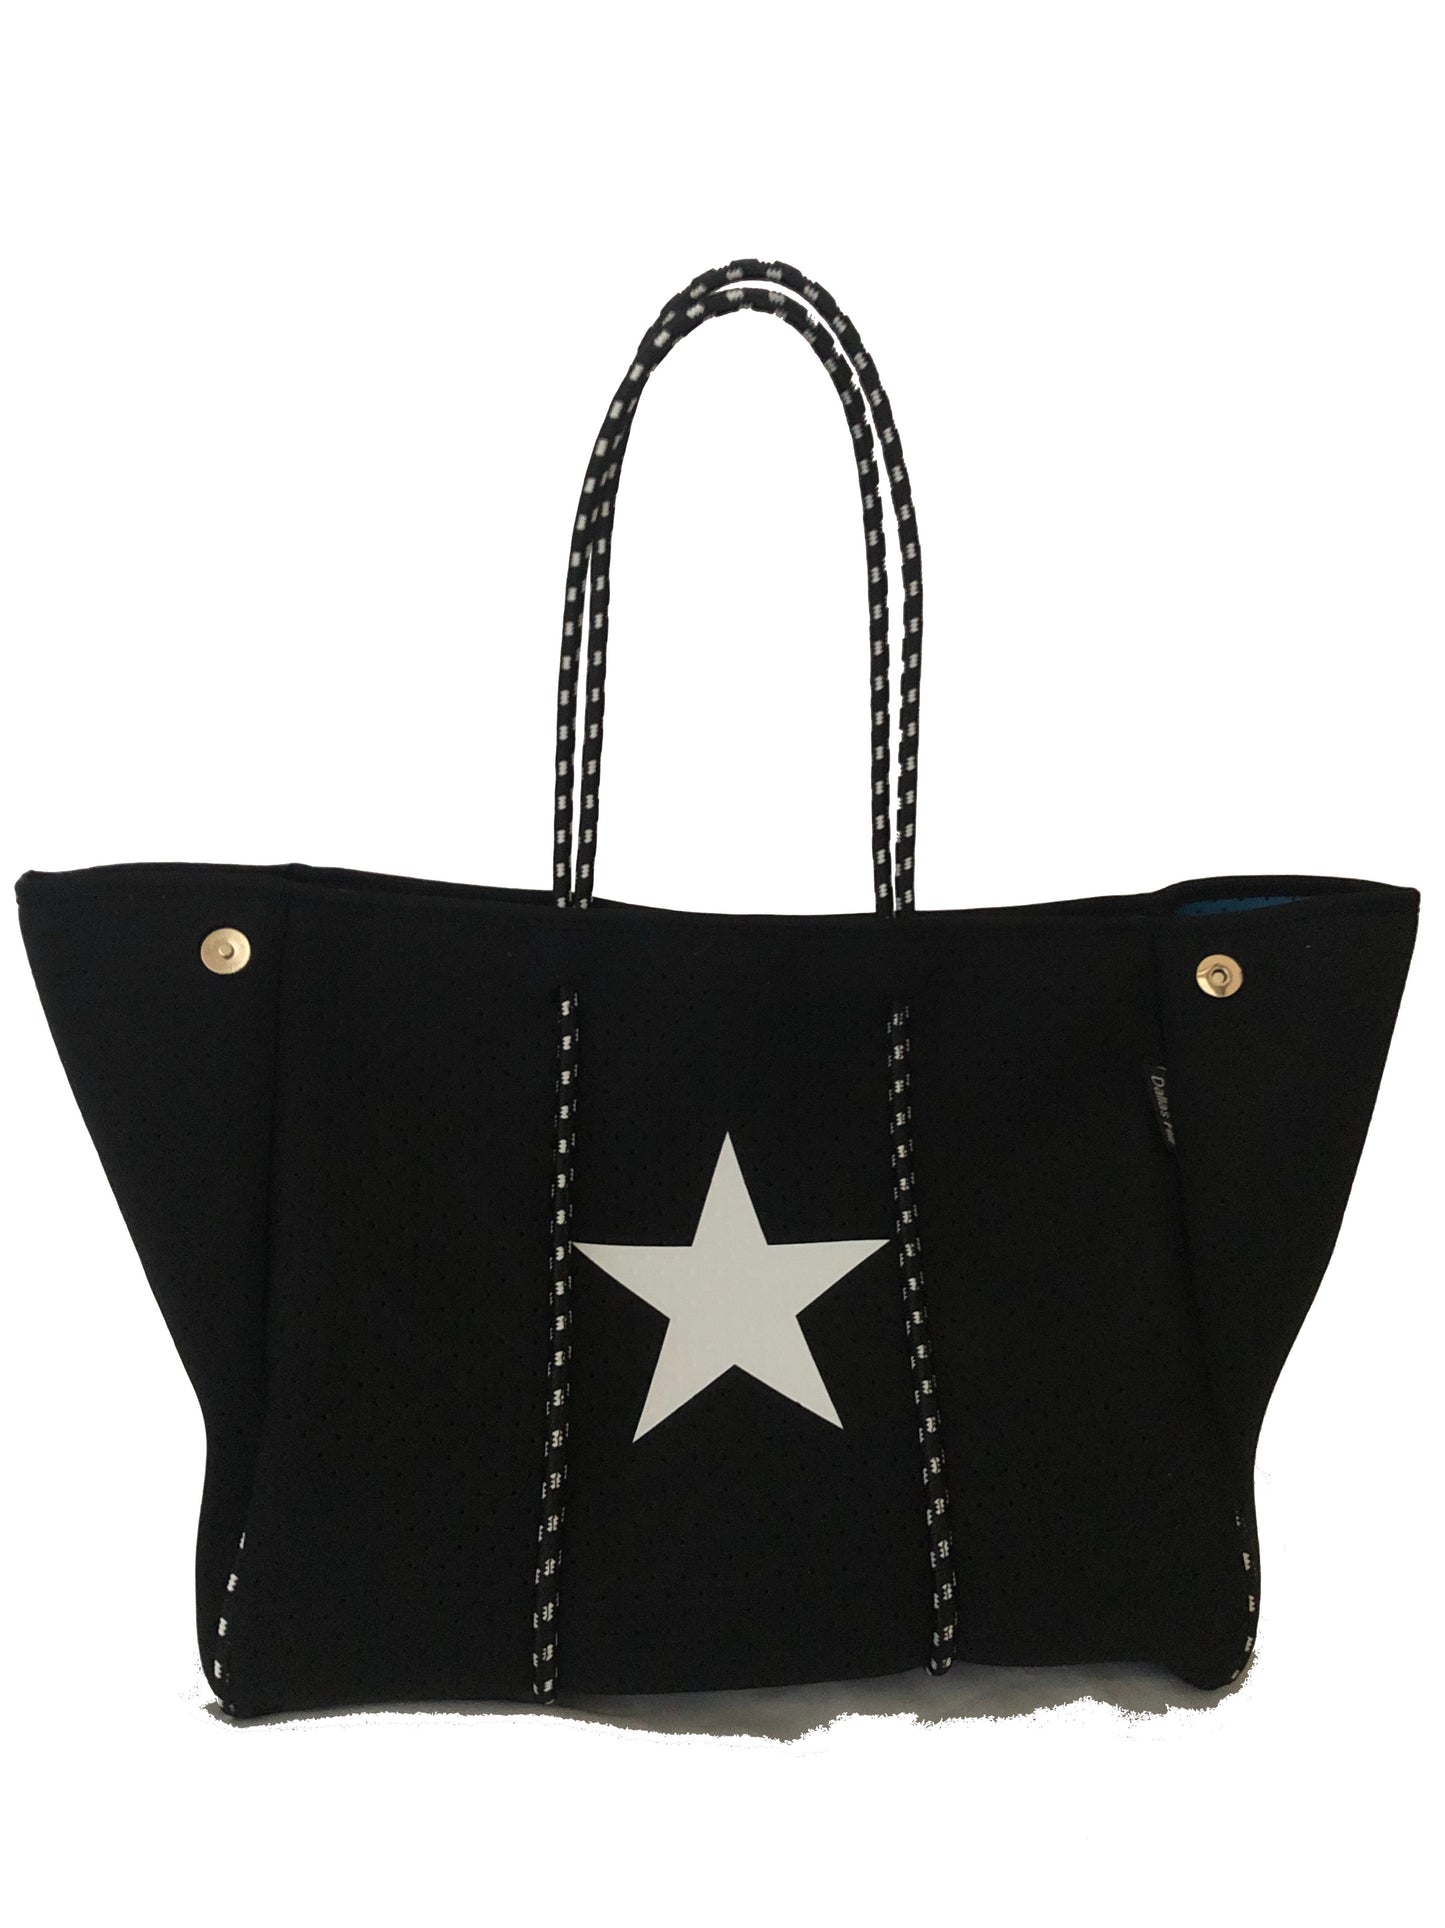 Neoprene Tote Bag Black White Star by Dallas Hill Design